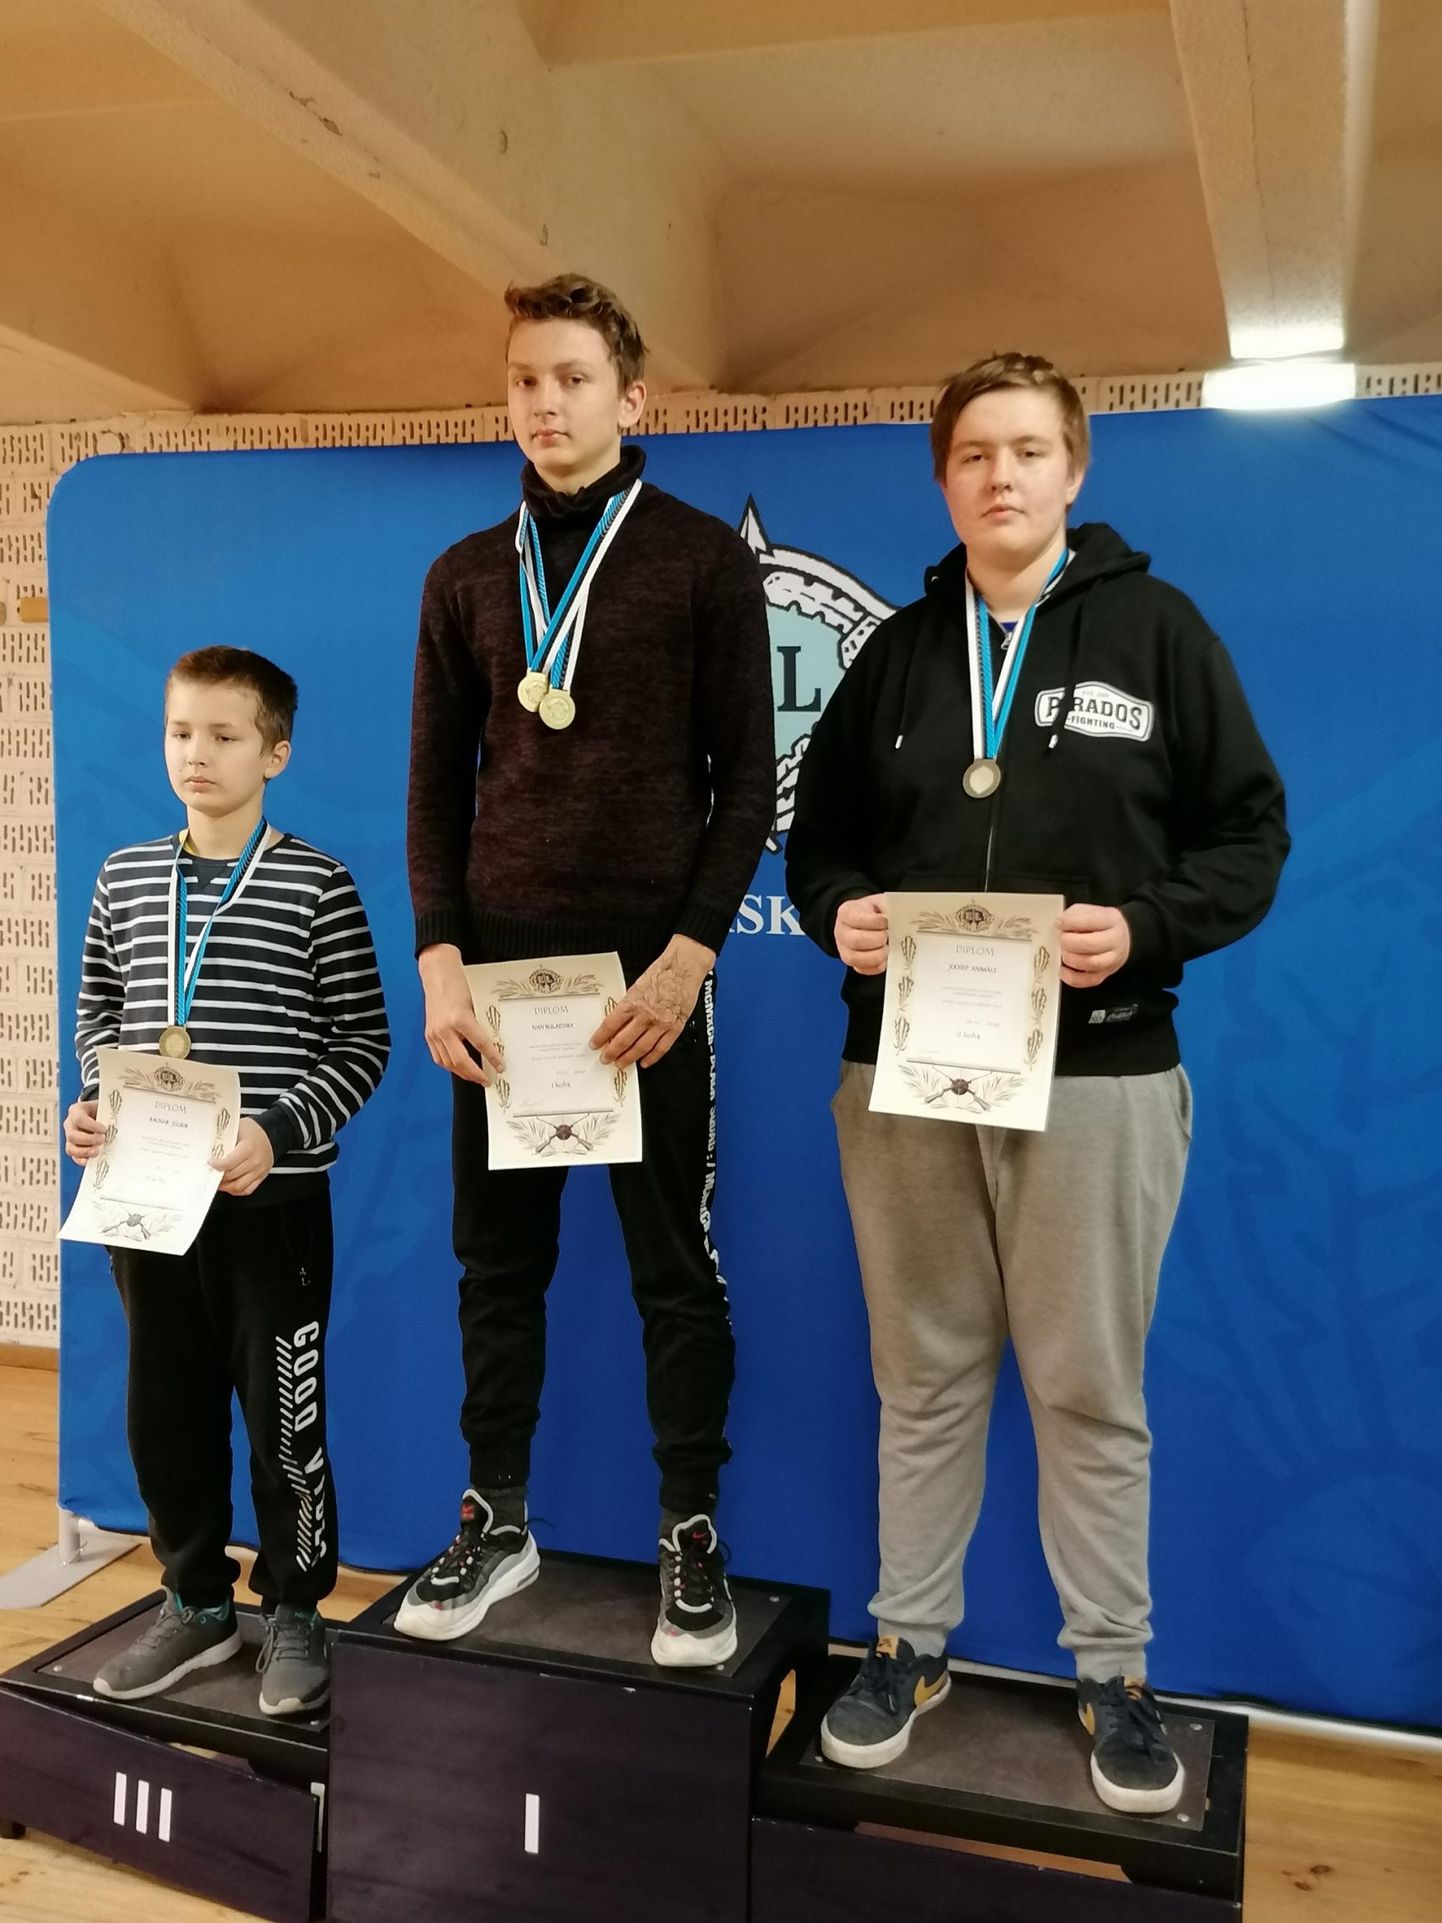 Viljandi spordikooli õpilane Joosep Animägi sai Eesti meistrivõistlustel astuda kahel korral pjedestaali teisele astmele.